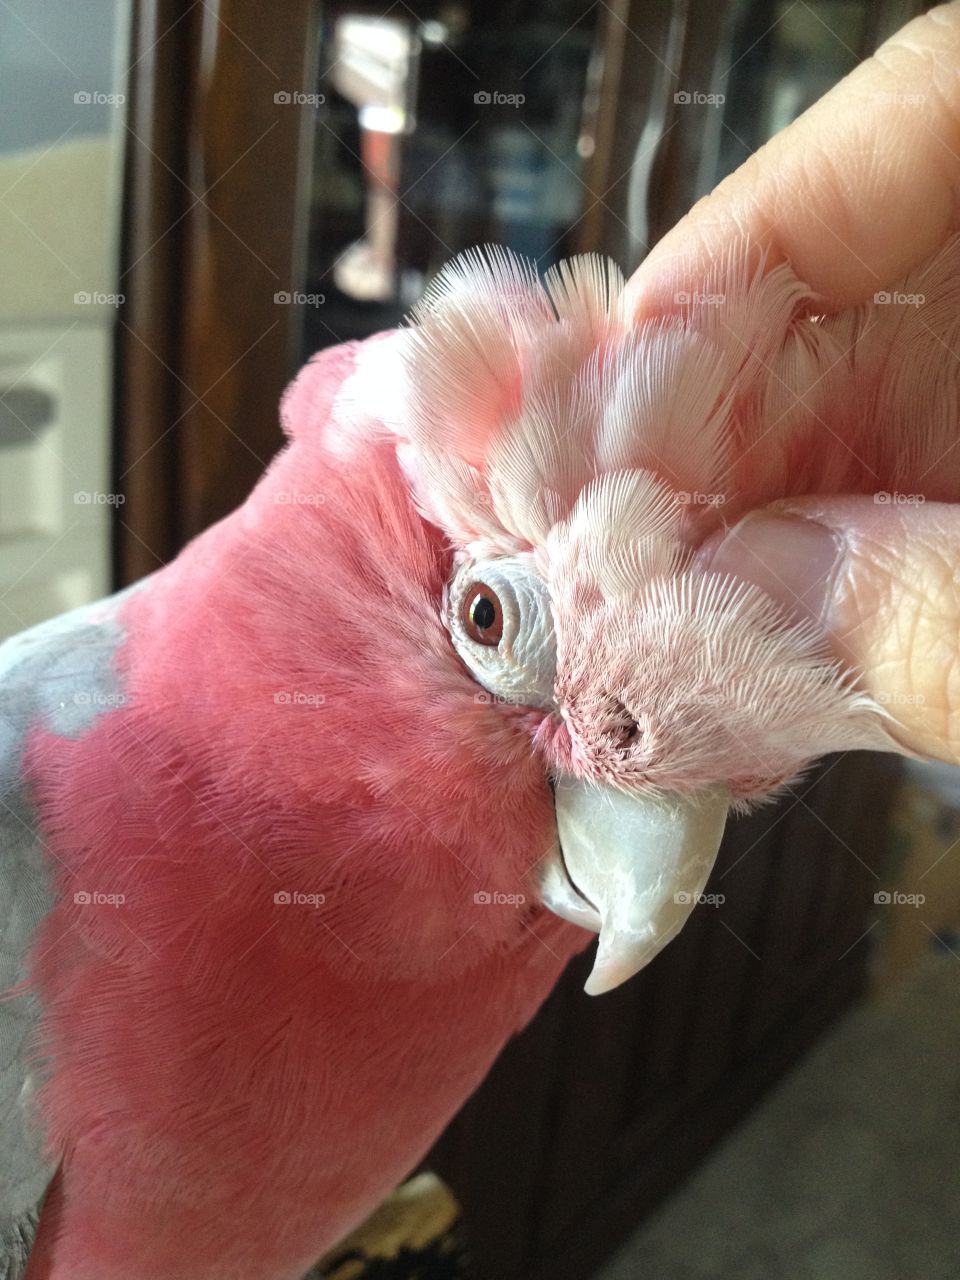 galah pink and grey cockatoo